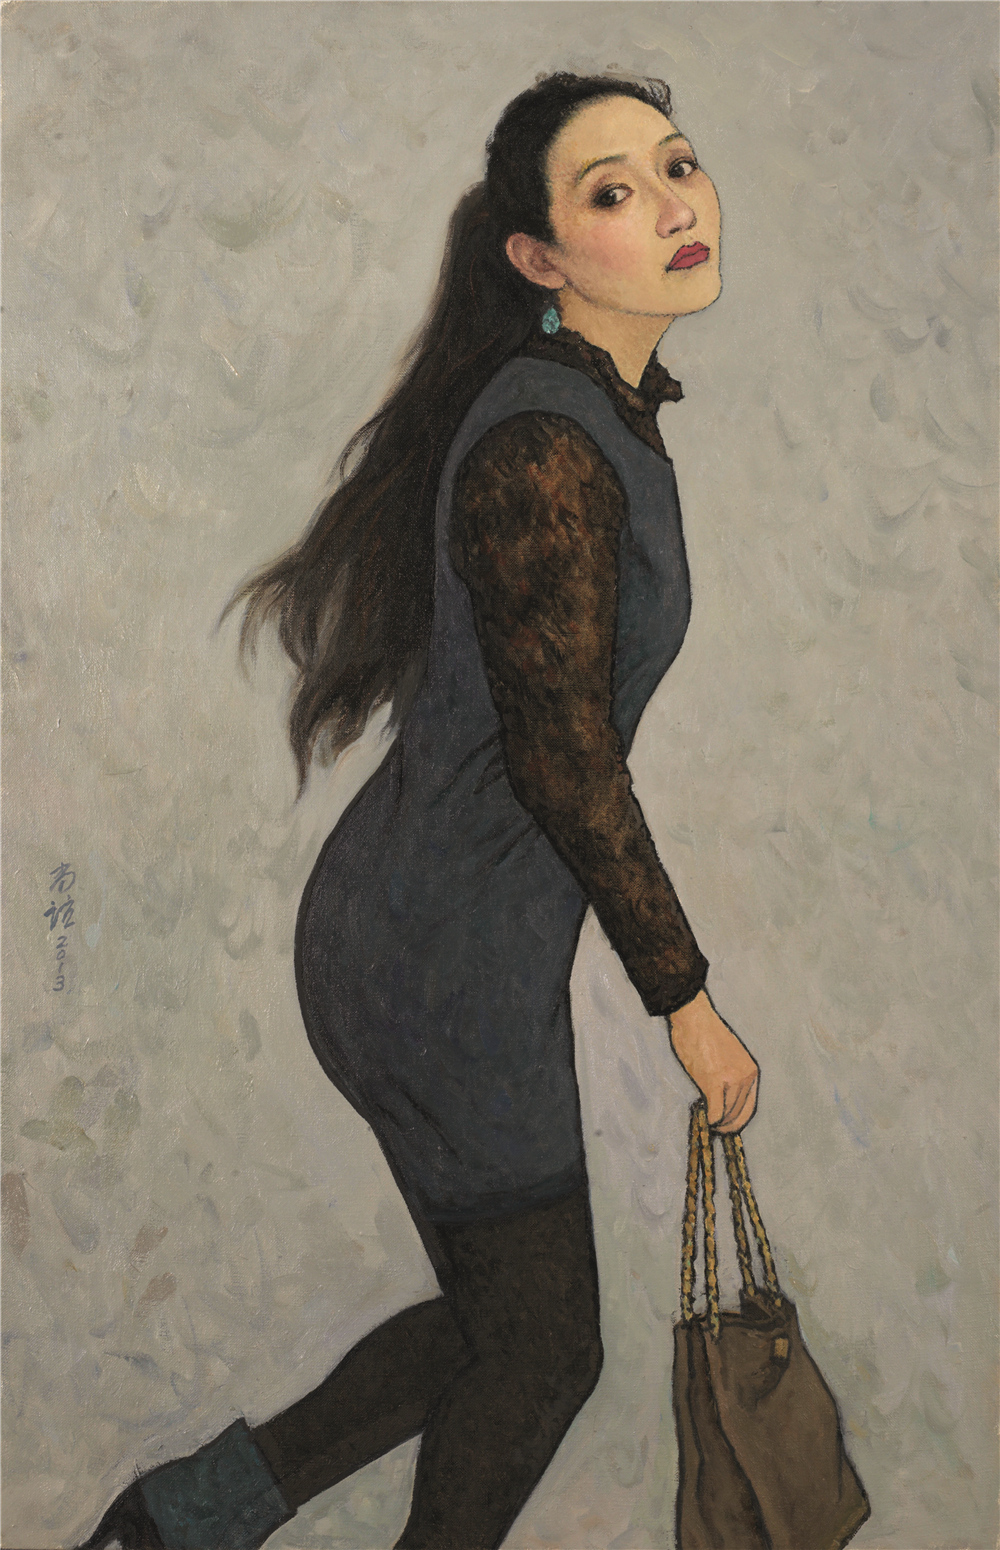 跳动的青春 靳尚谊（1934-） 油画 2013 100x65cm 中国美术馆藏 2019年艺术家捐赠